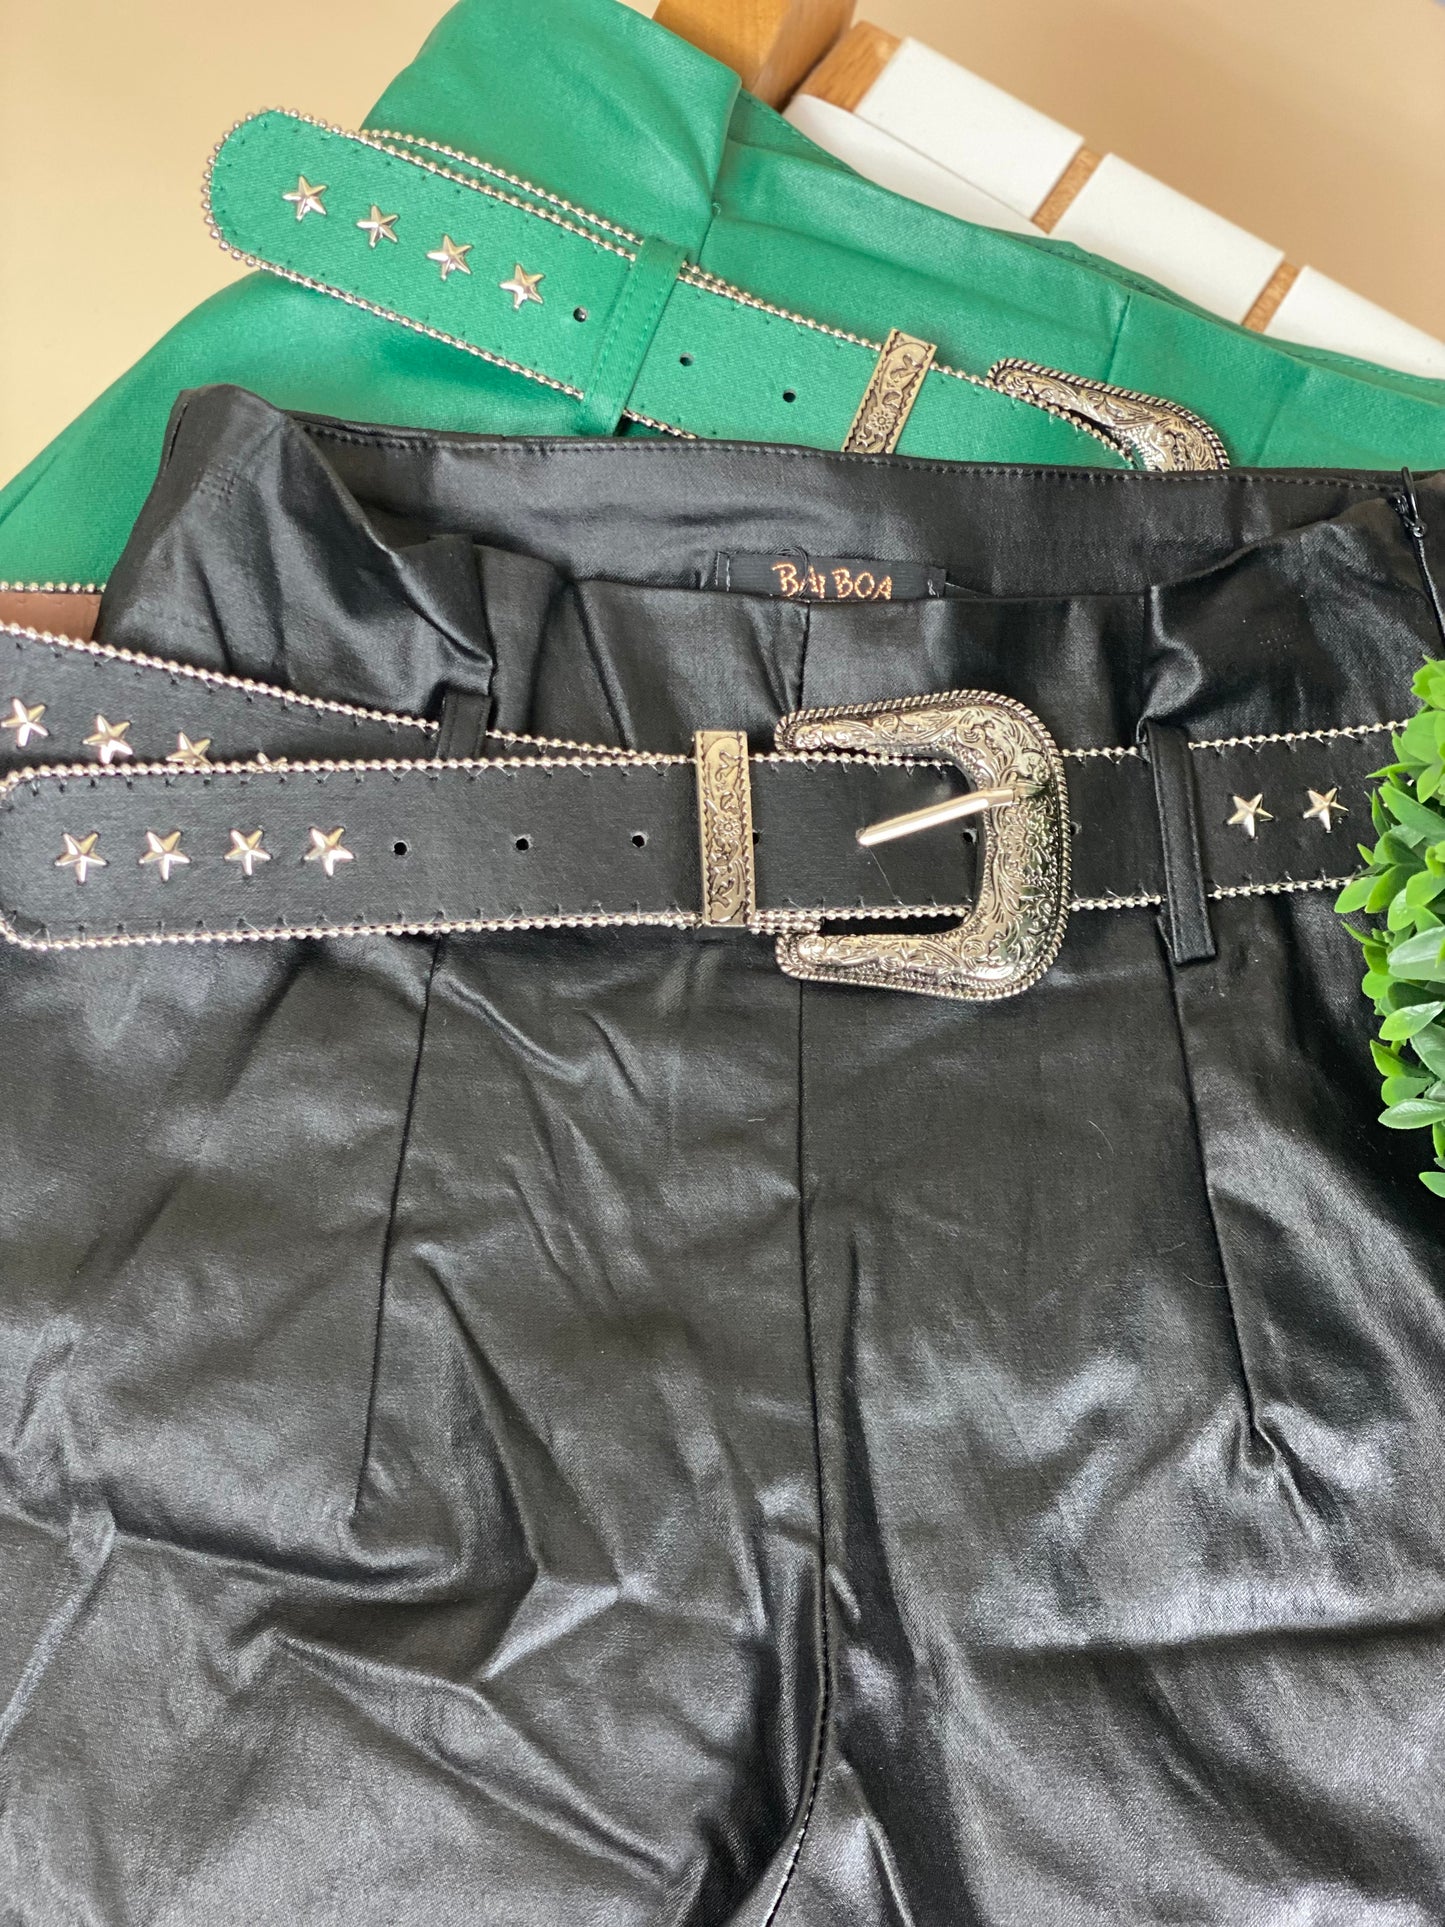 Balboa leather short with belt